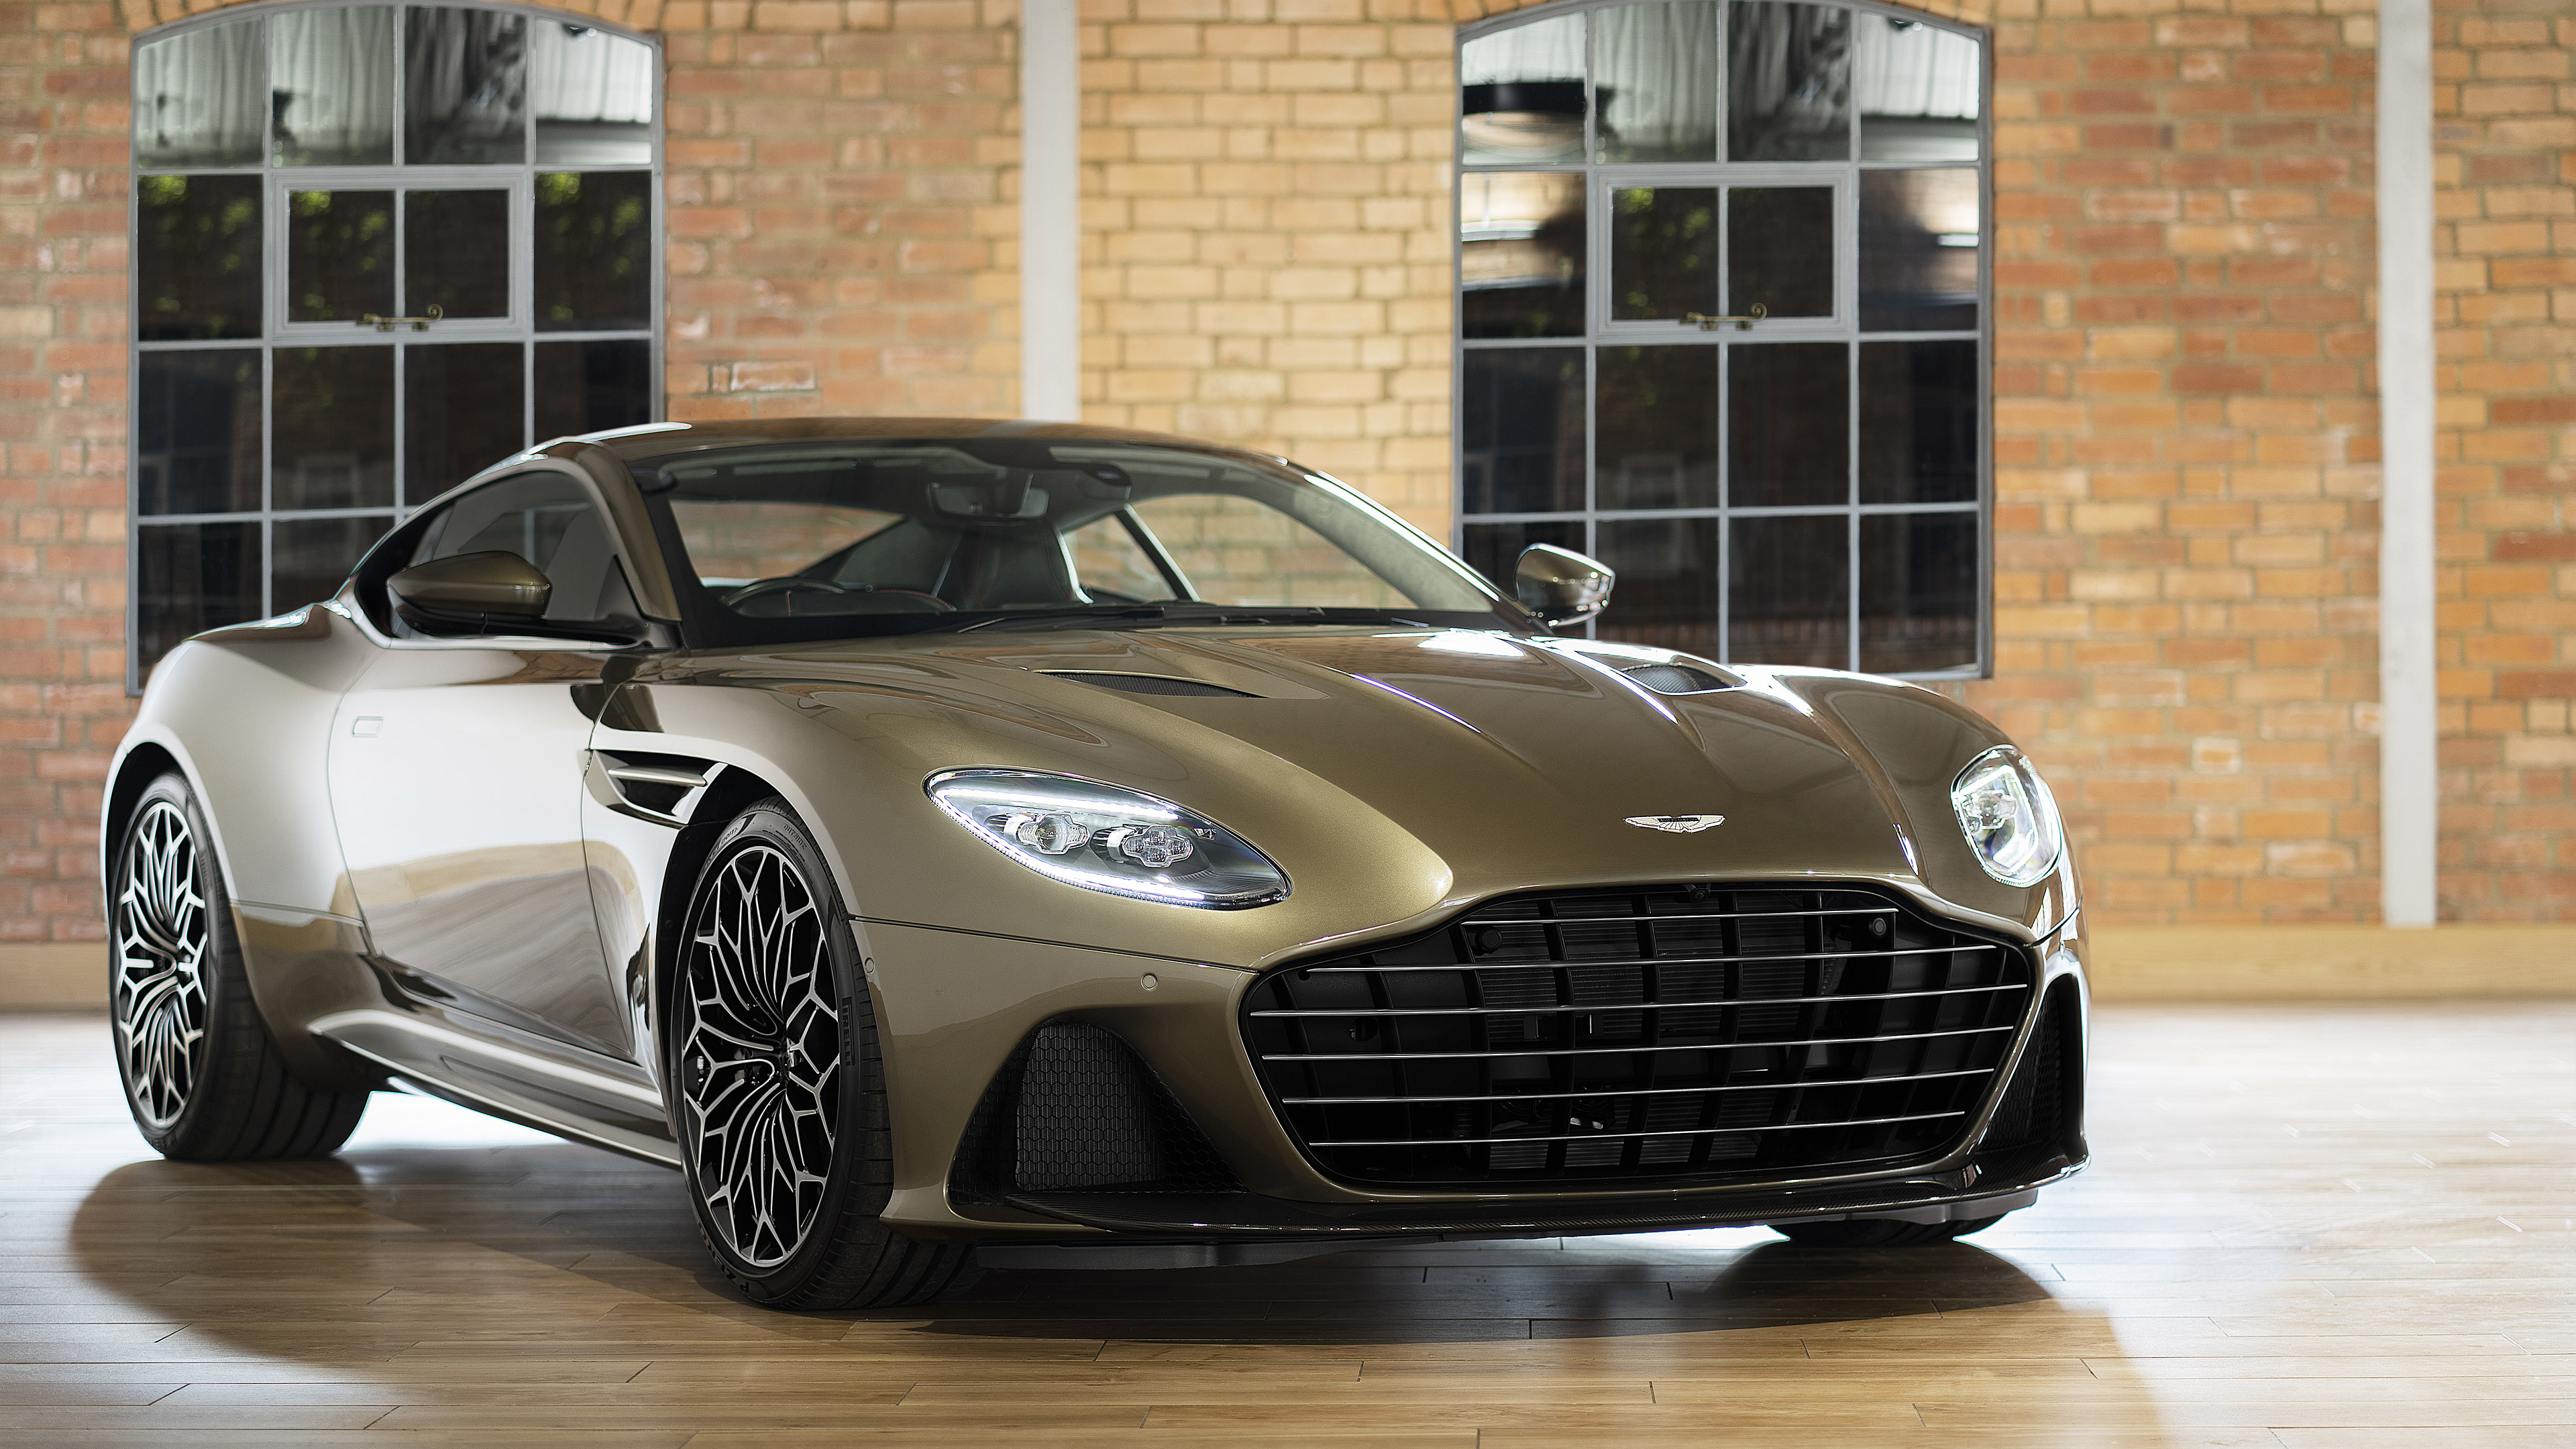 Descargar fondos de escritorio de Aston Martin Dbs Superleggera Edición Ohmss HD